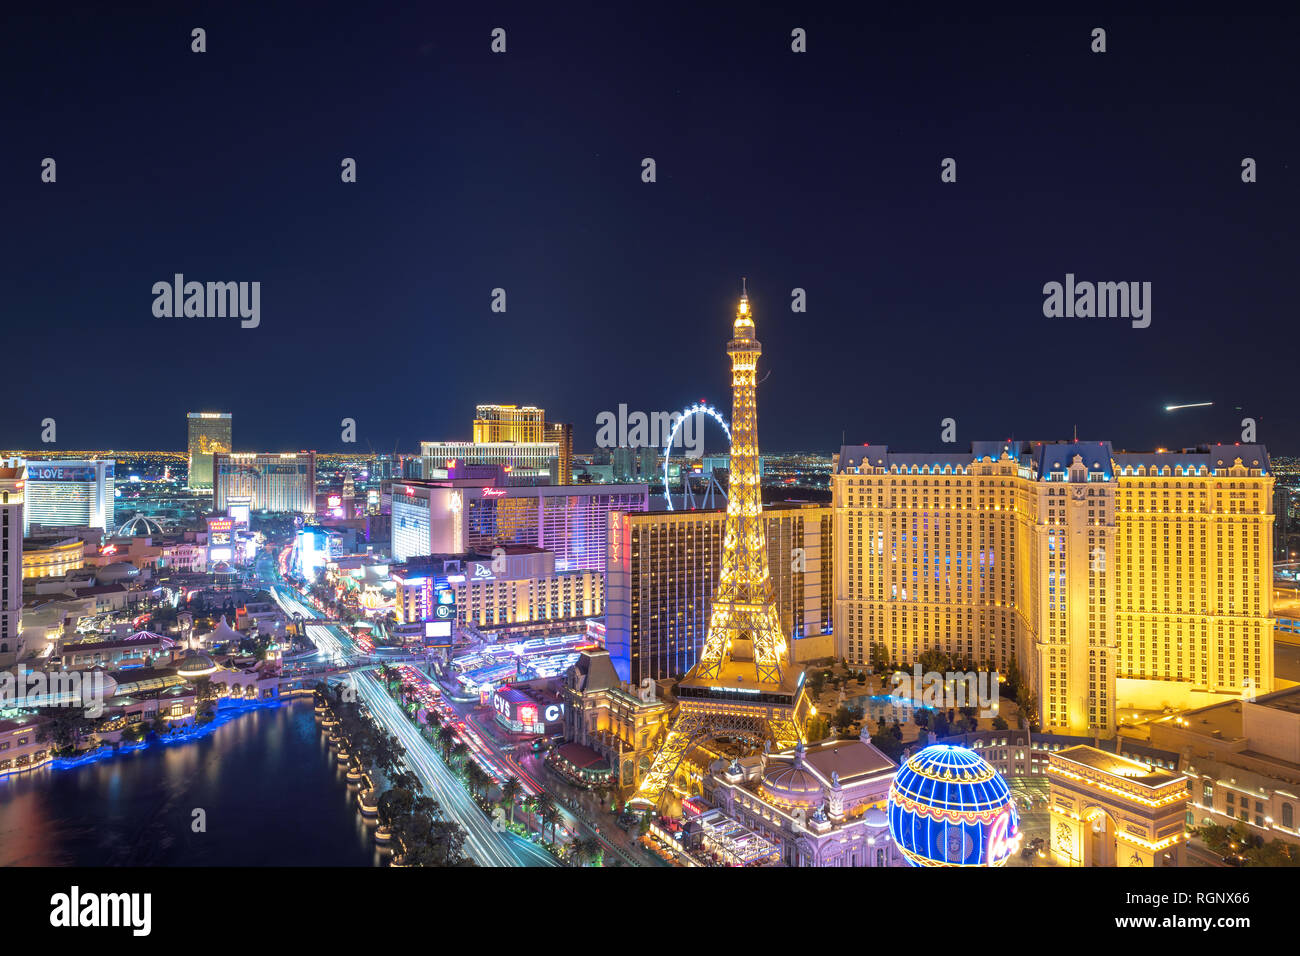 Las Vegas skyline at night Stock Photo